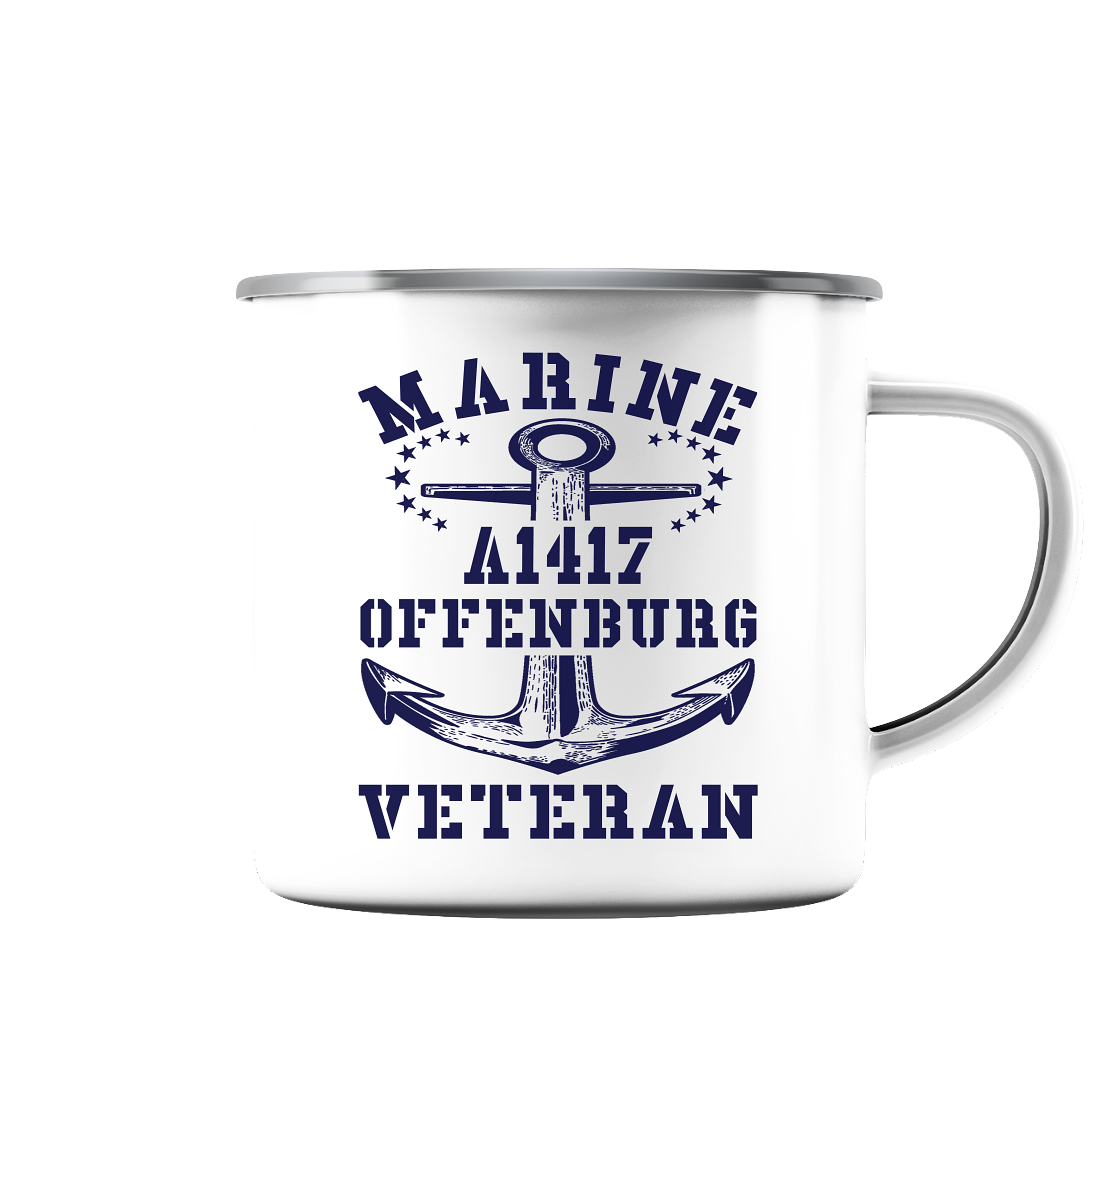 Troßschiff A1417 OFFENBURG Marine Veteran - Emaille Tasse (Silber)